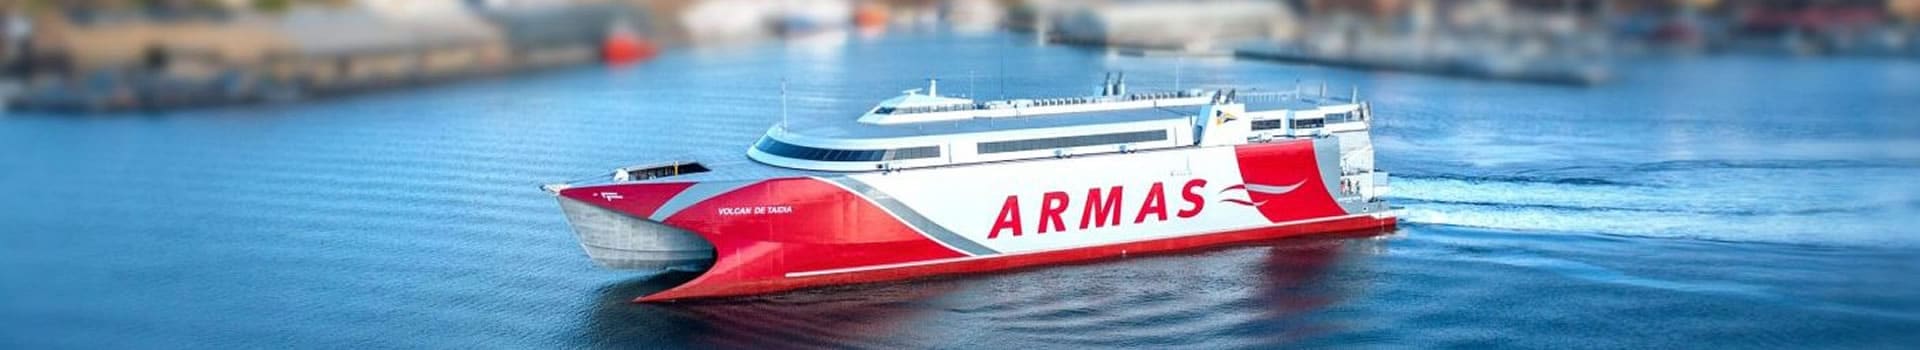 Les meilleures offres de ferries et bateaux de Naviera Armas